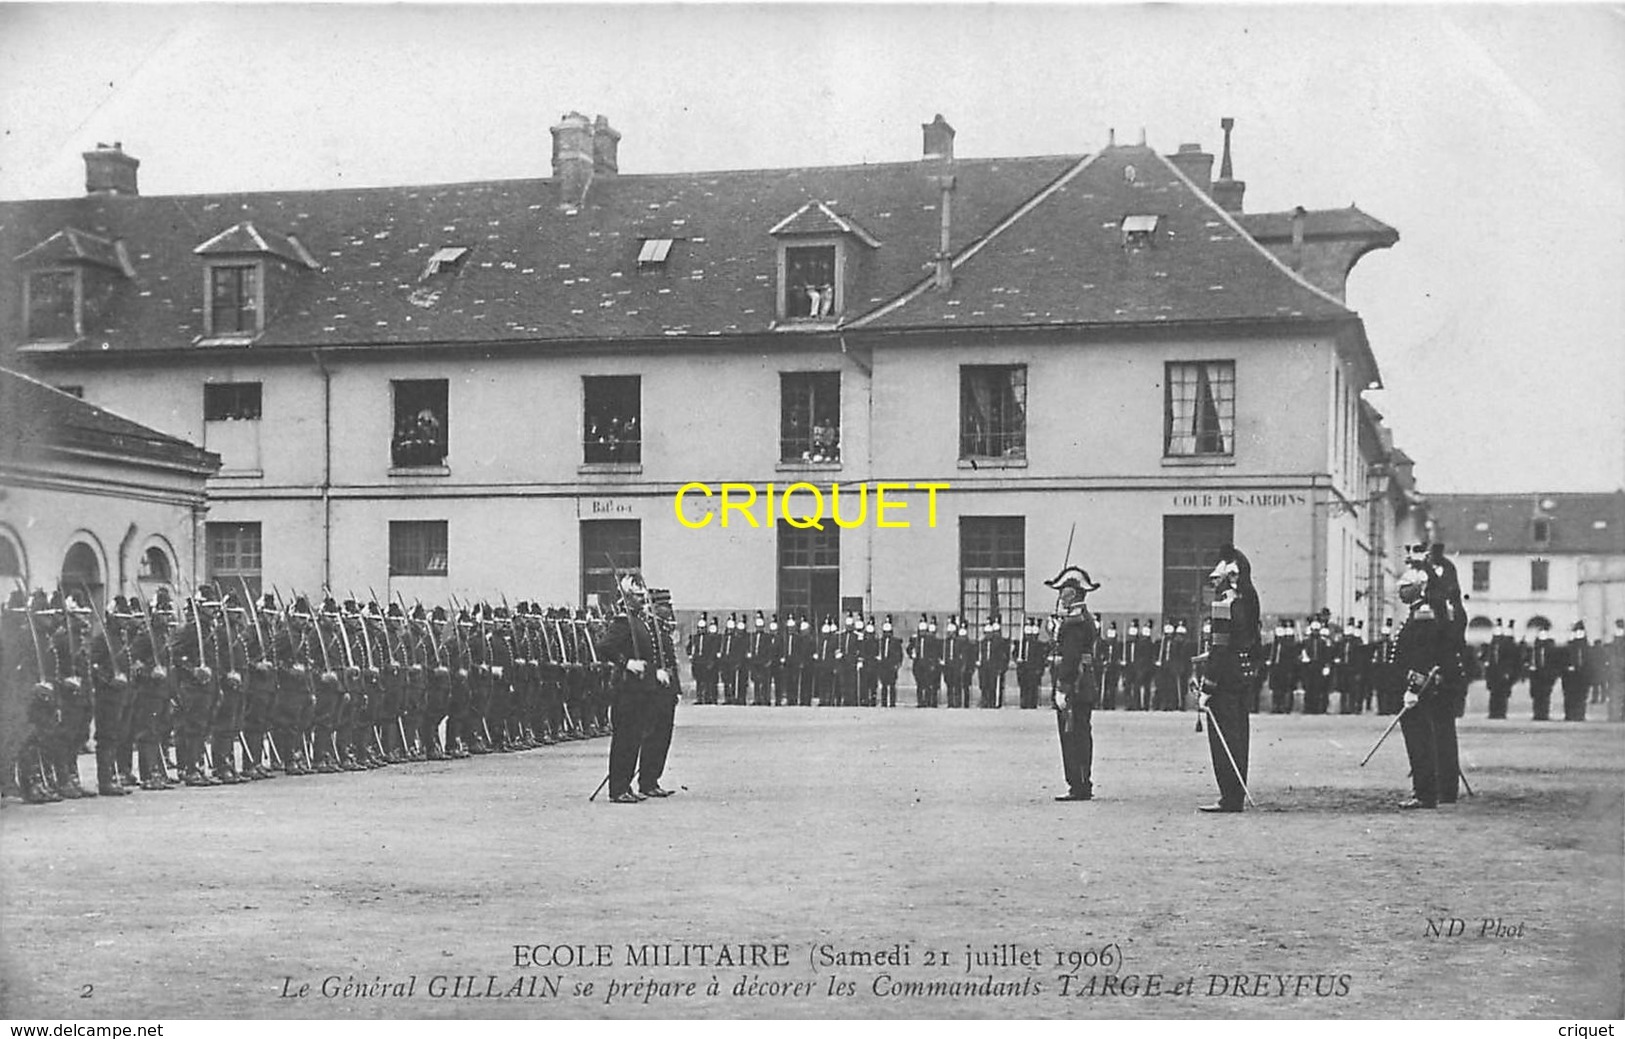 Histoire, Justice, Affaire Dreyfus, série complète de 6 cartes, Gillan, Targe et Dreyfus à l'Ecole Militaire